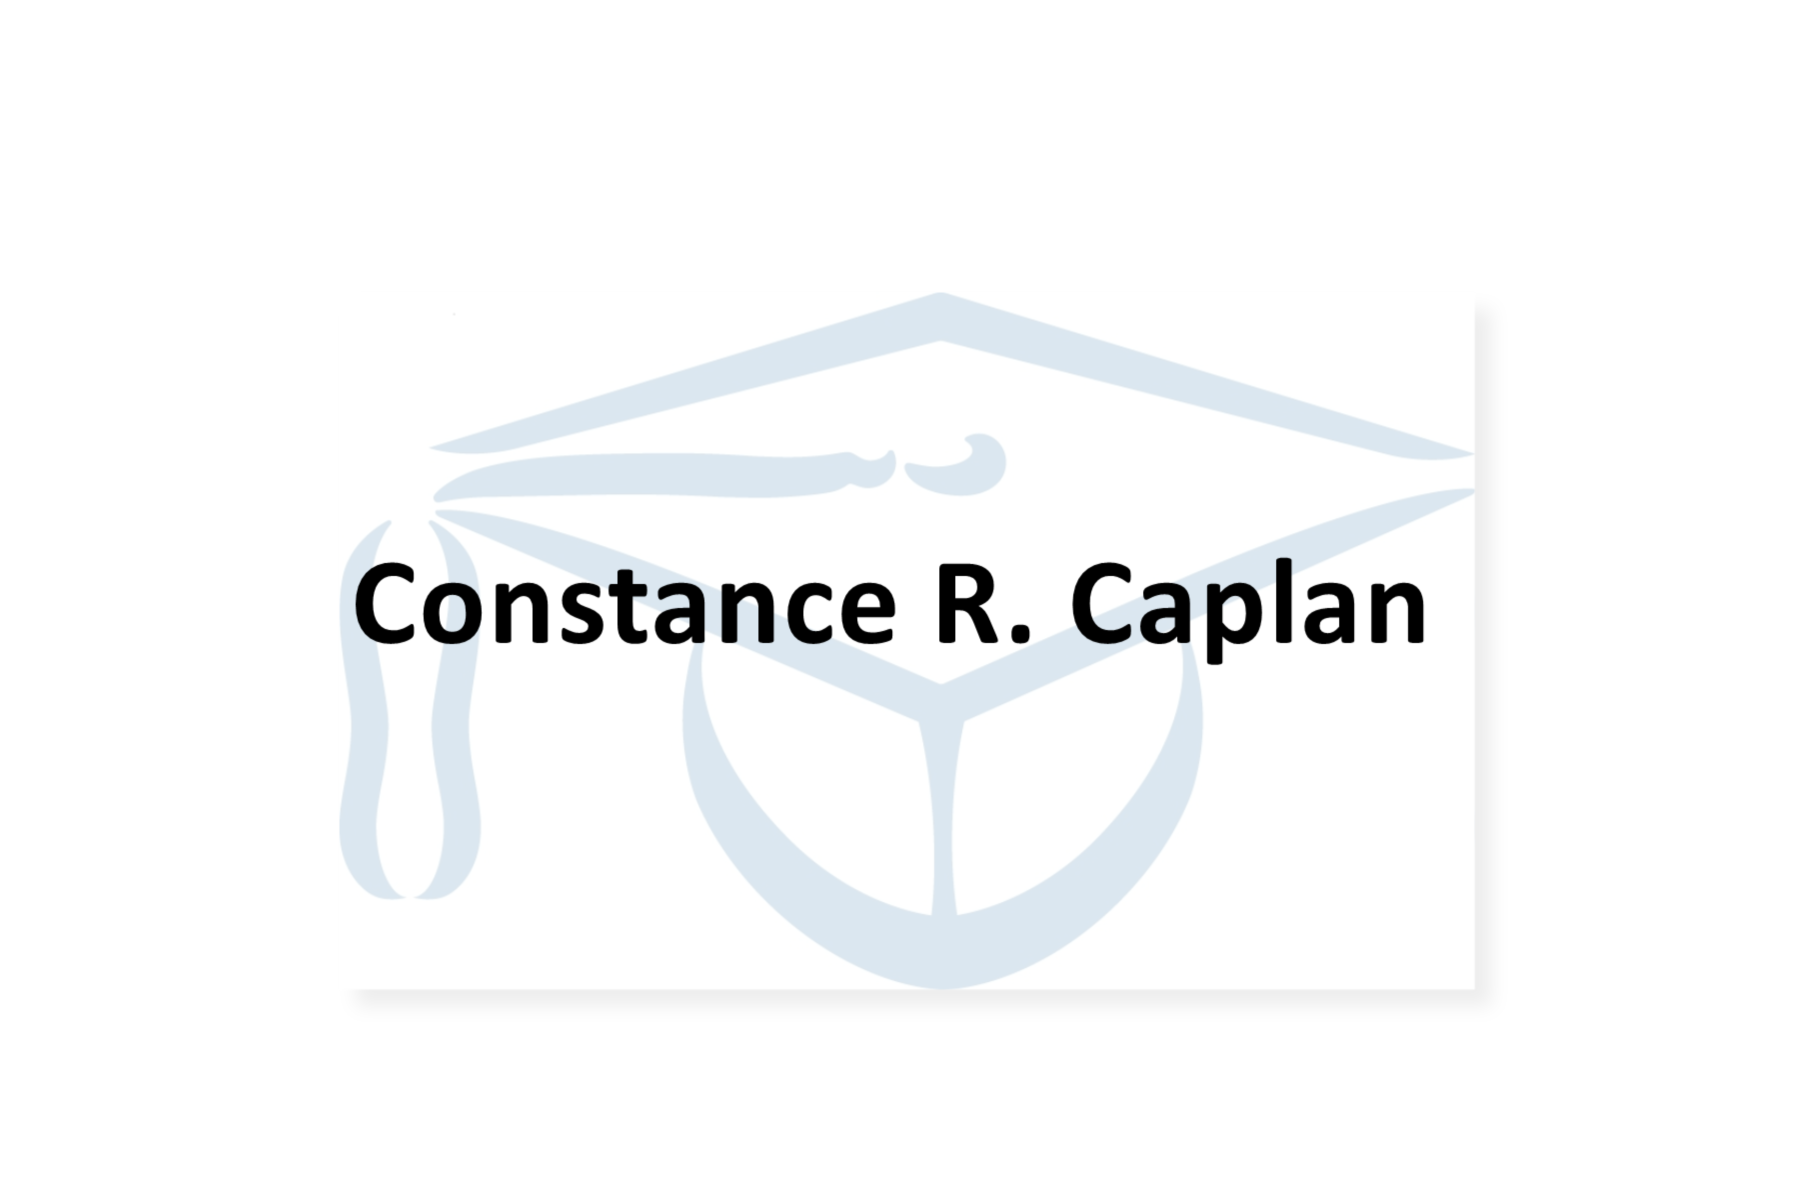 Constance R. Caplan